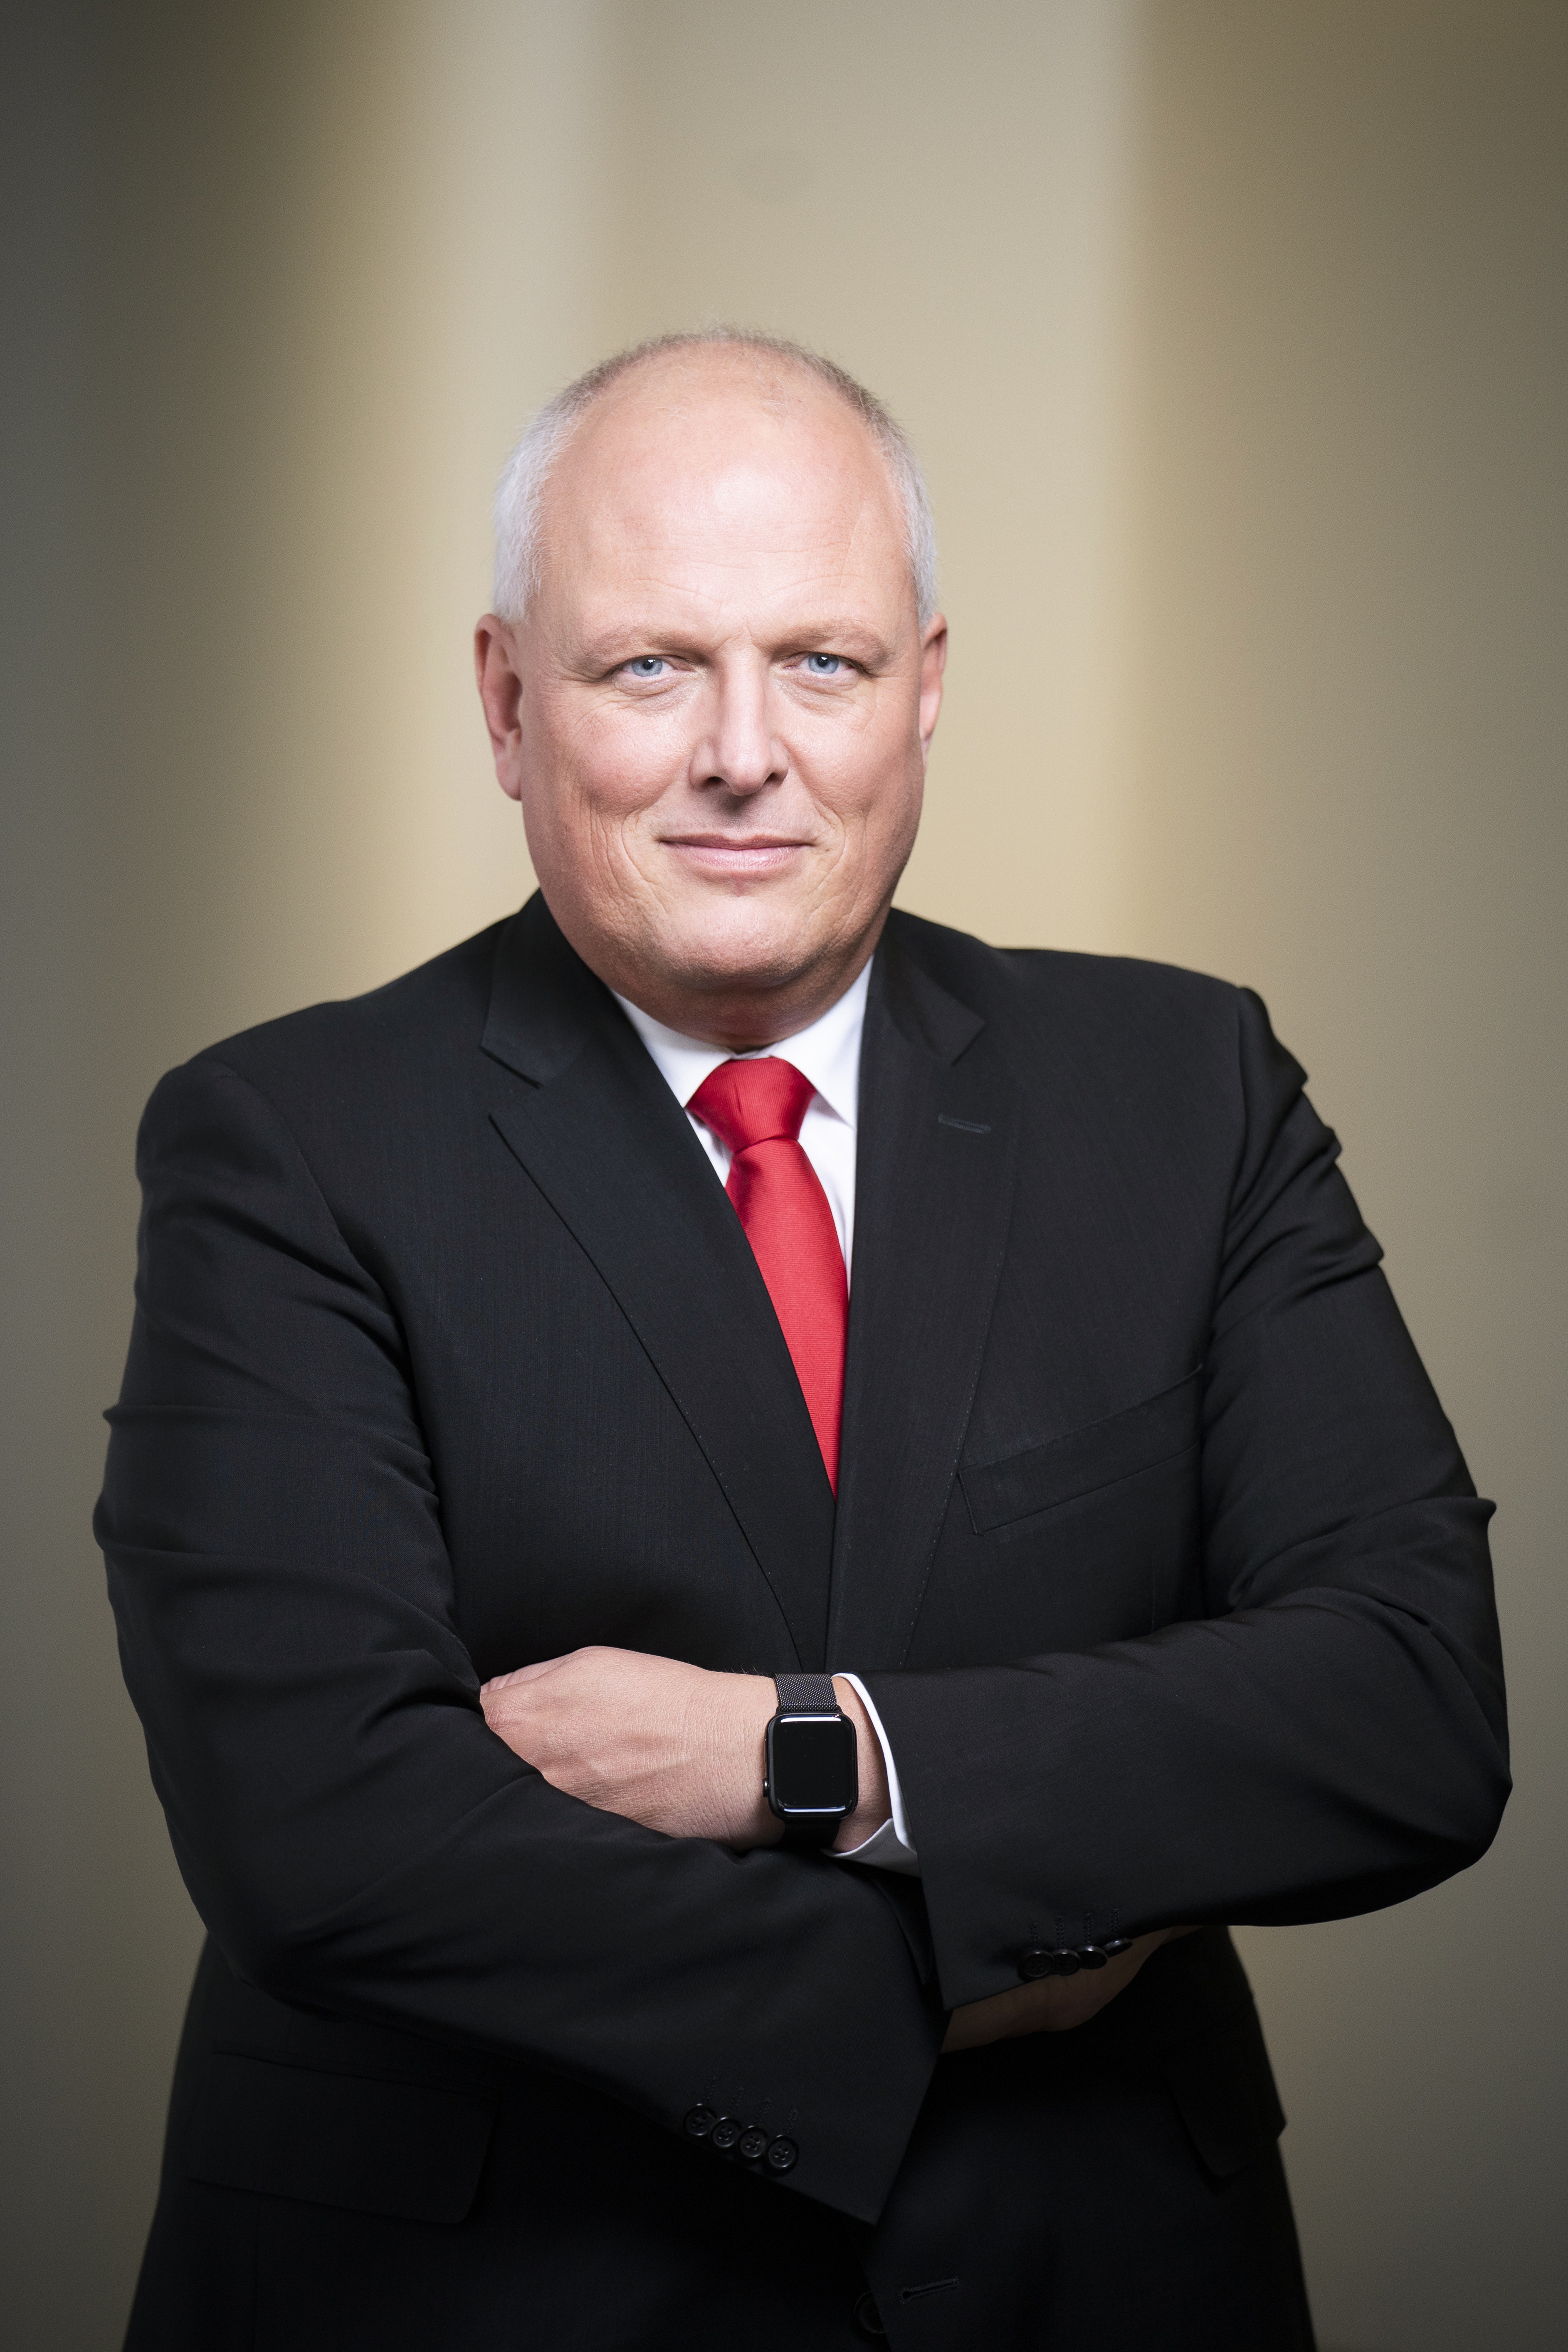 Ulrich Kelber, Bundesbeauftragter für den Datenschutz und die Informationsfreiheit (Porträt).